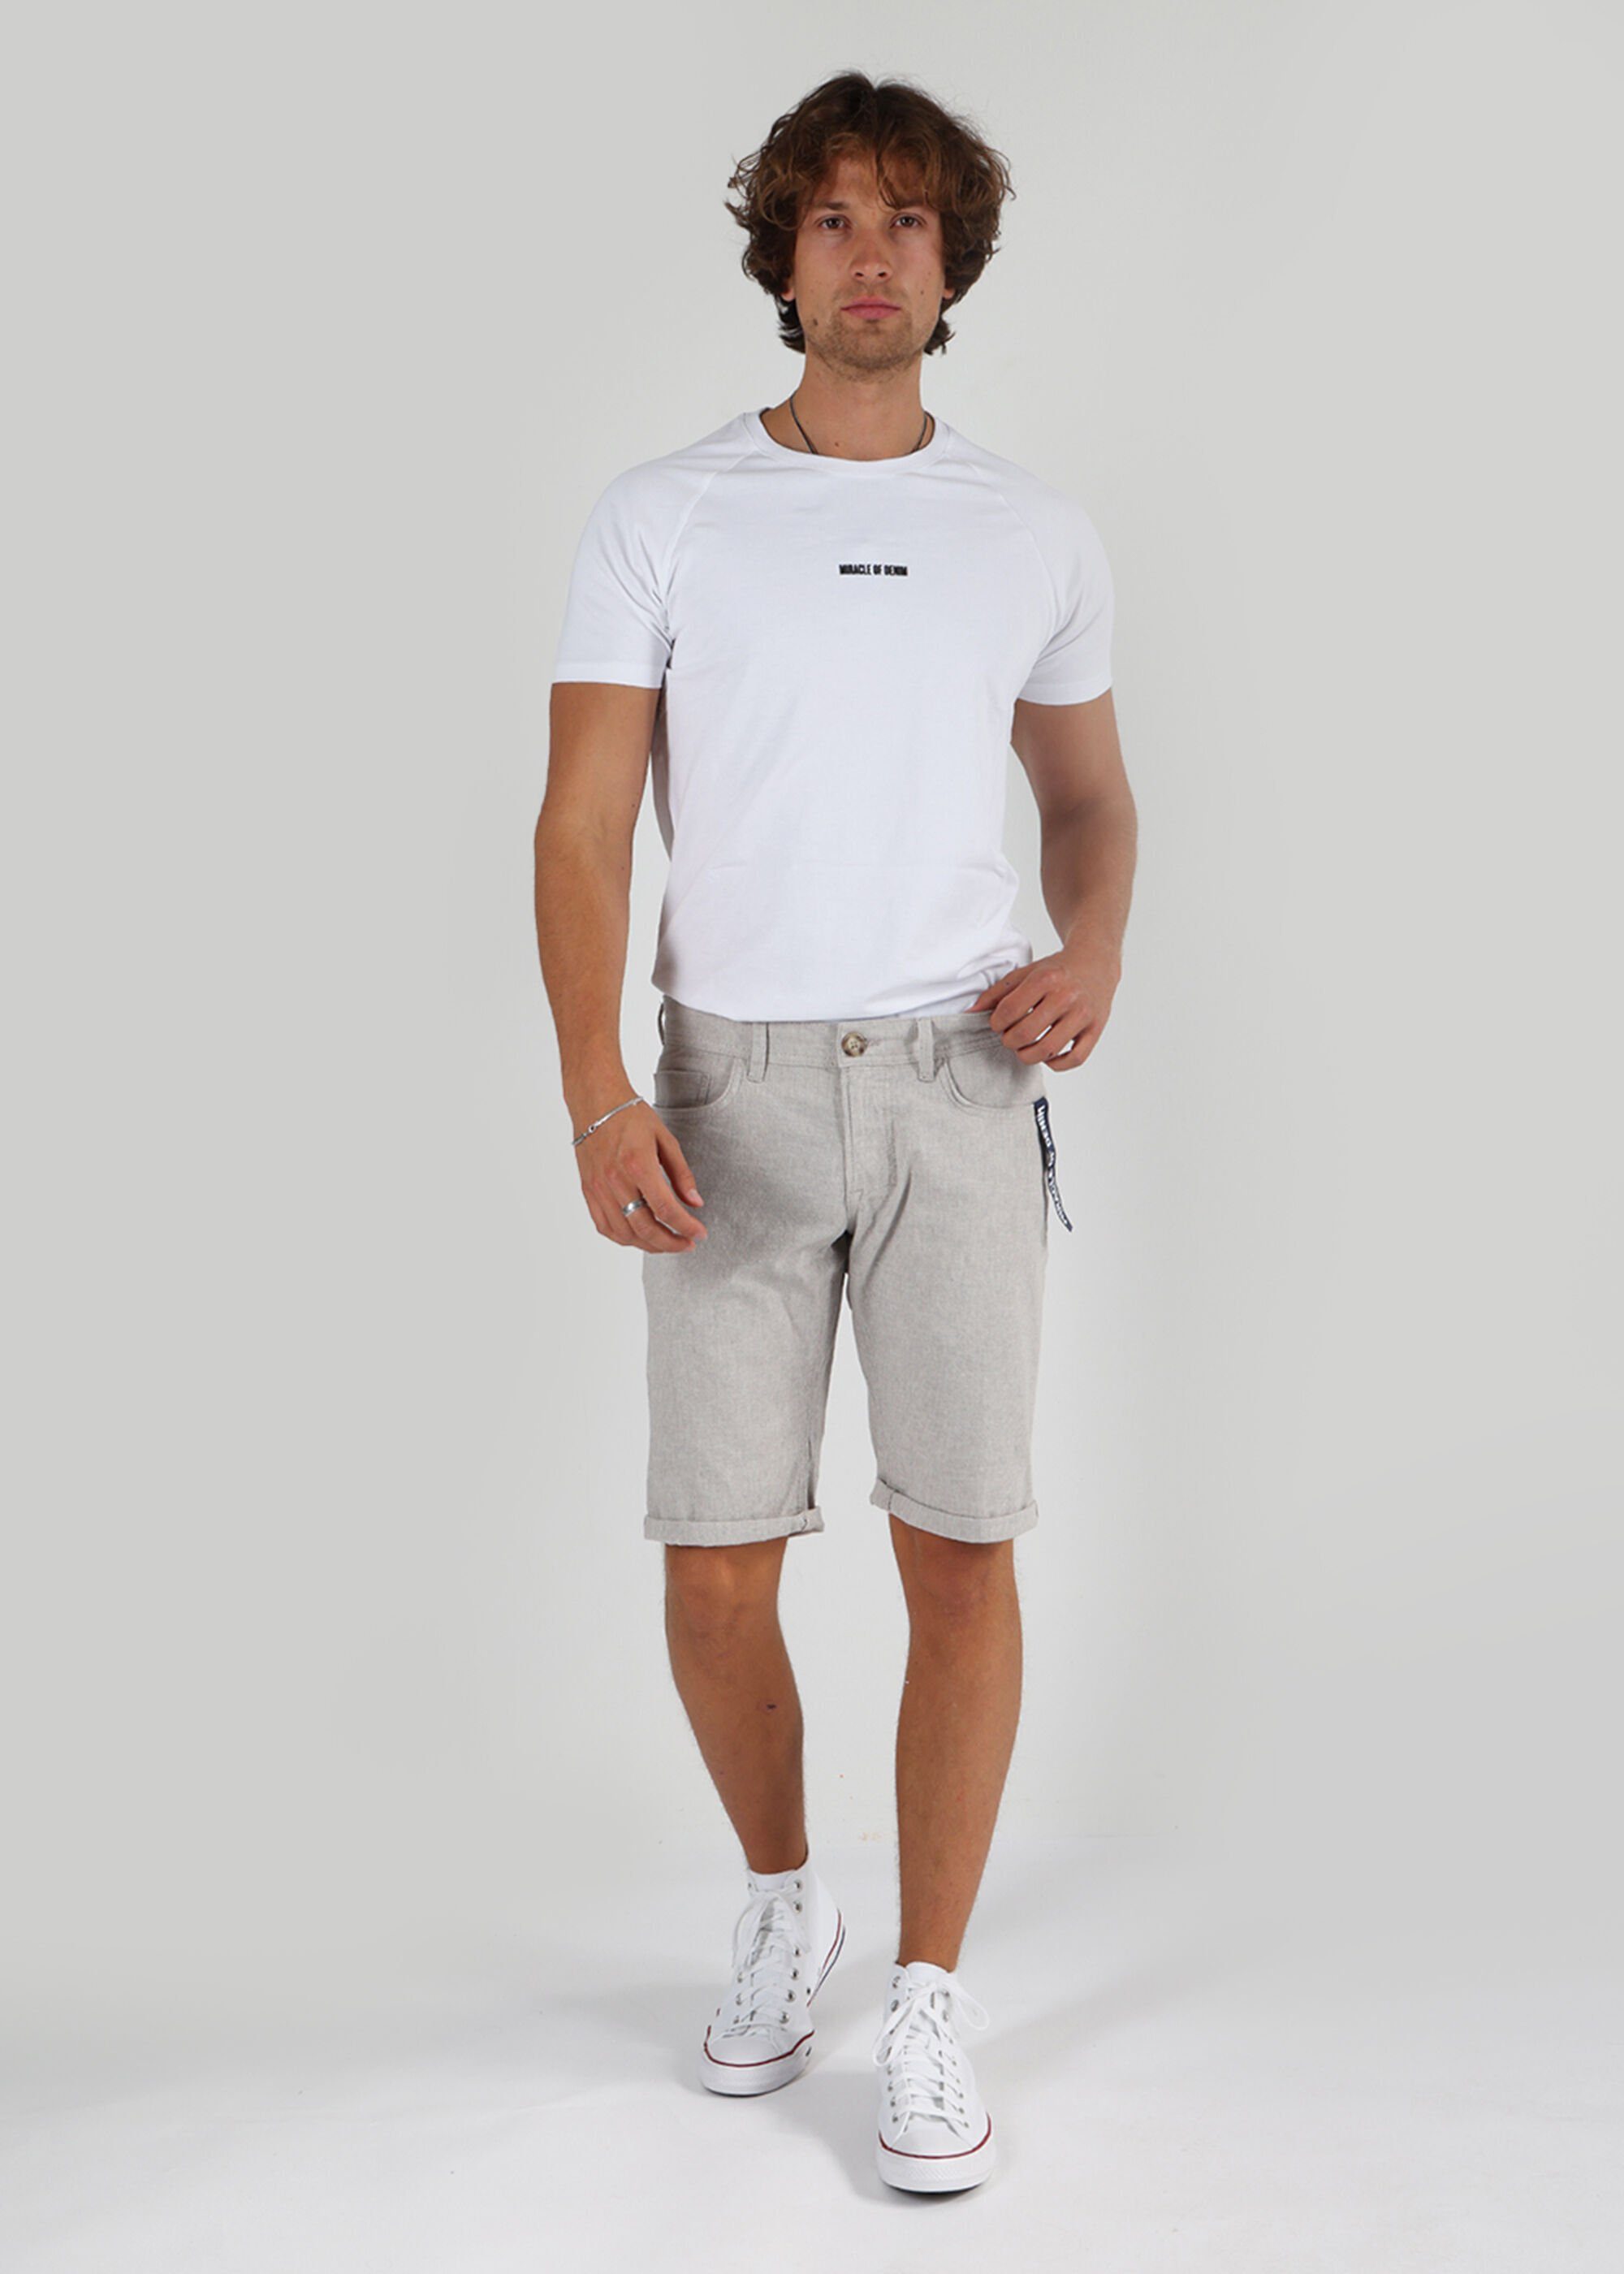 Grey Shorts Shorts Style im of Stripe Miracle 5 Thomas Denim Light Pocket